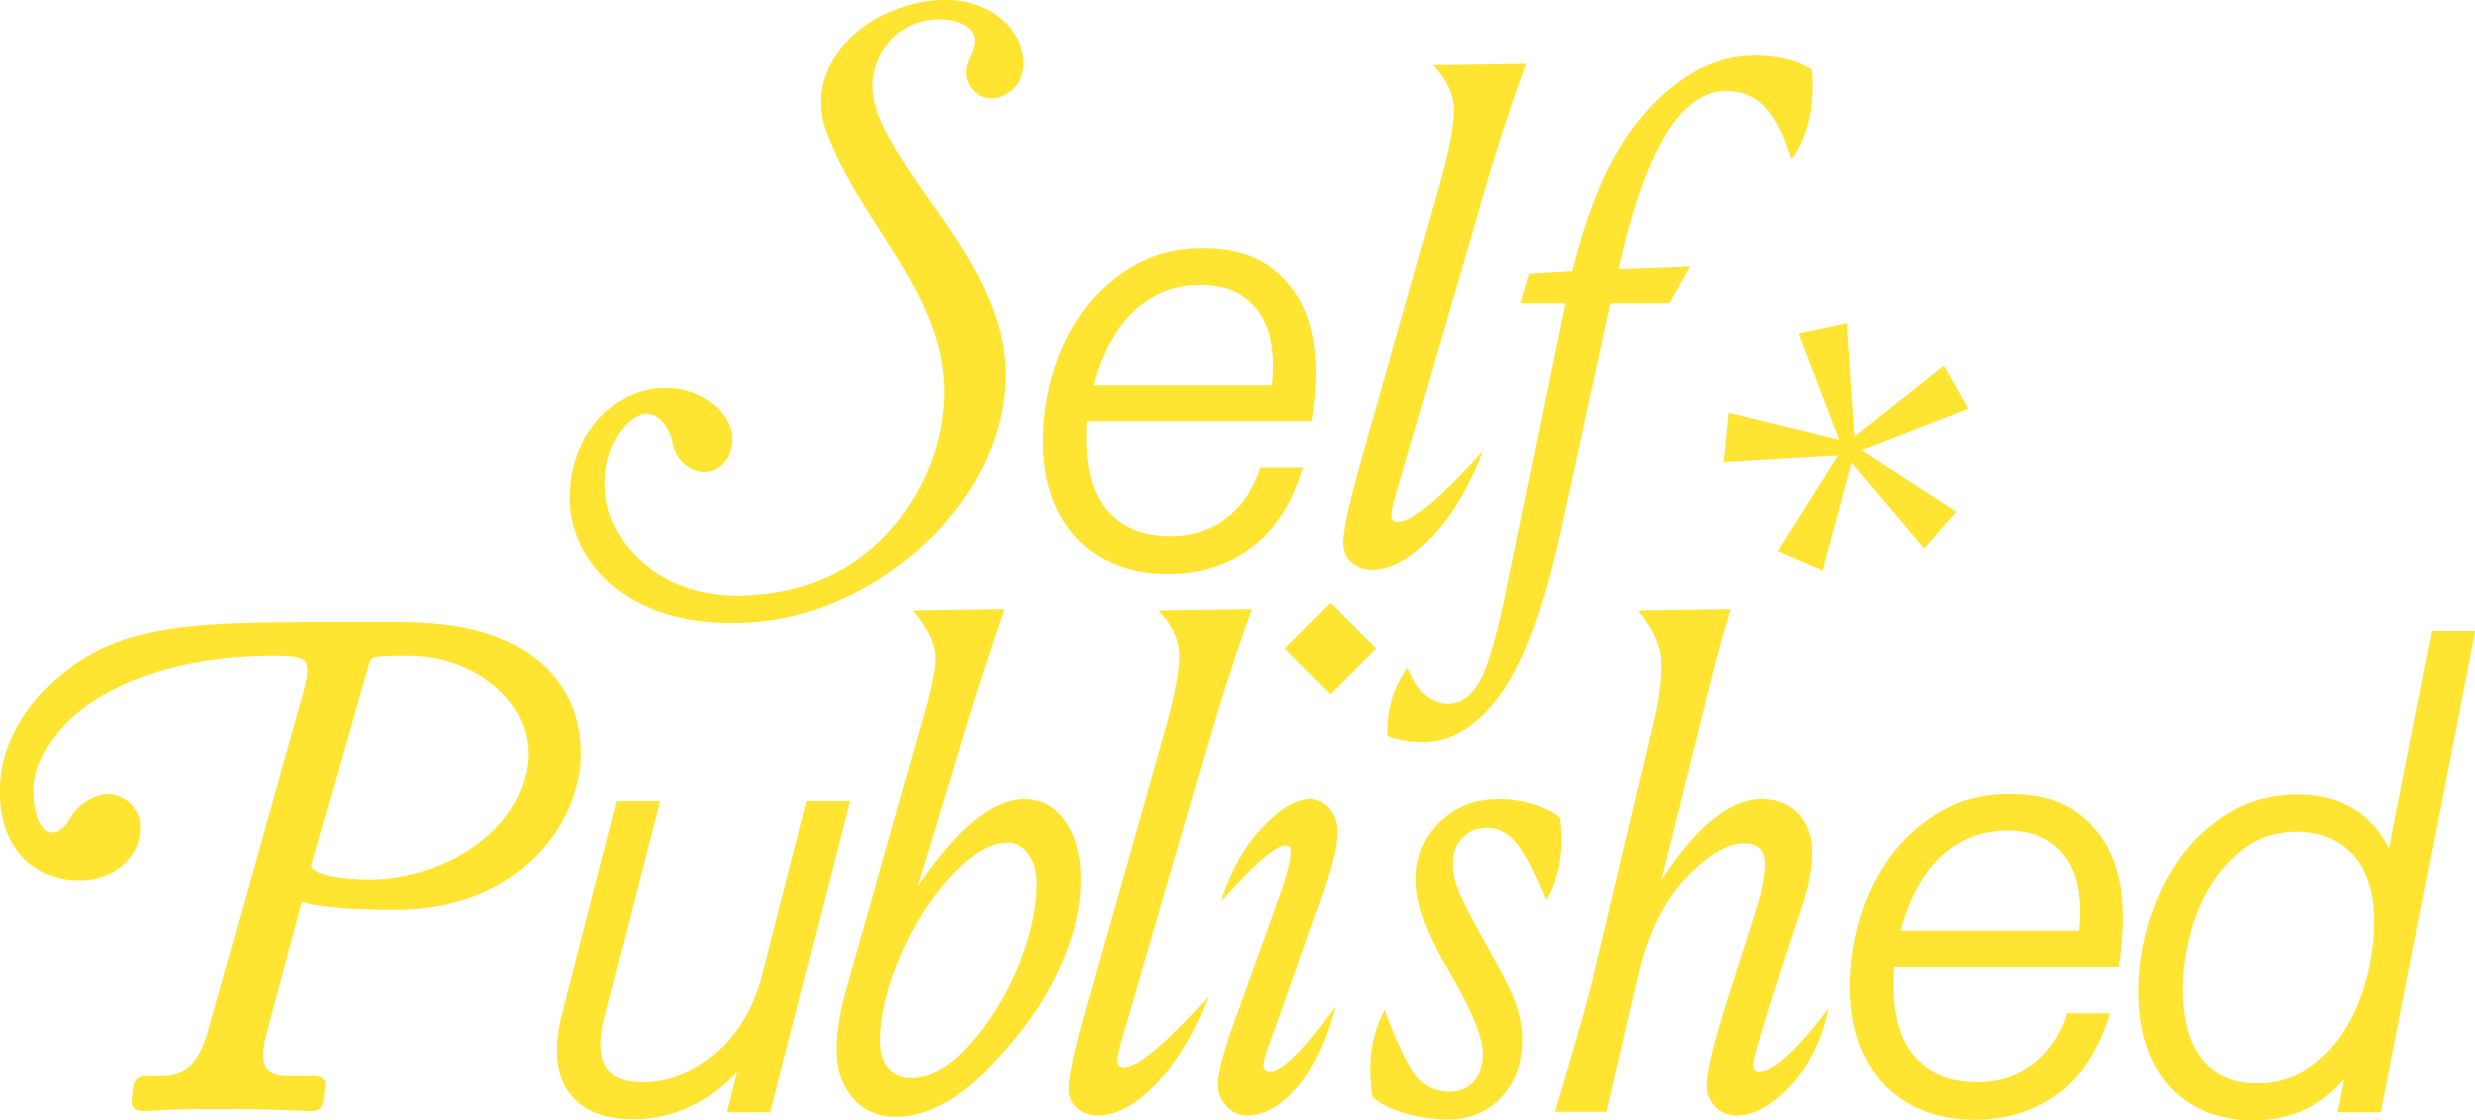 Self Published Logo